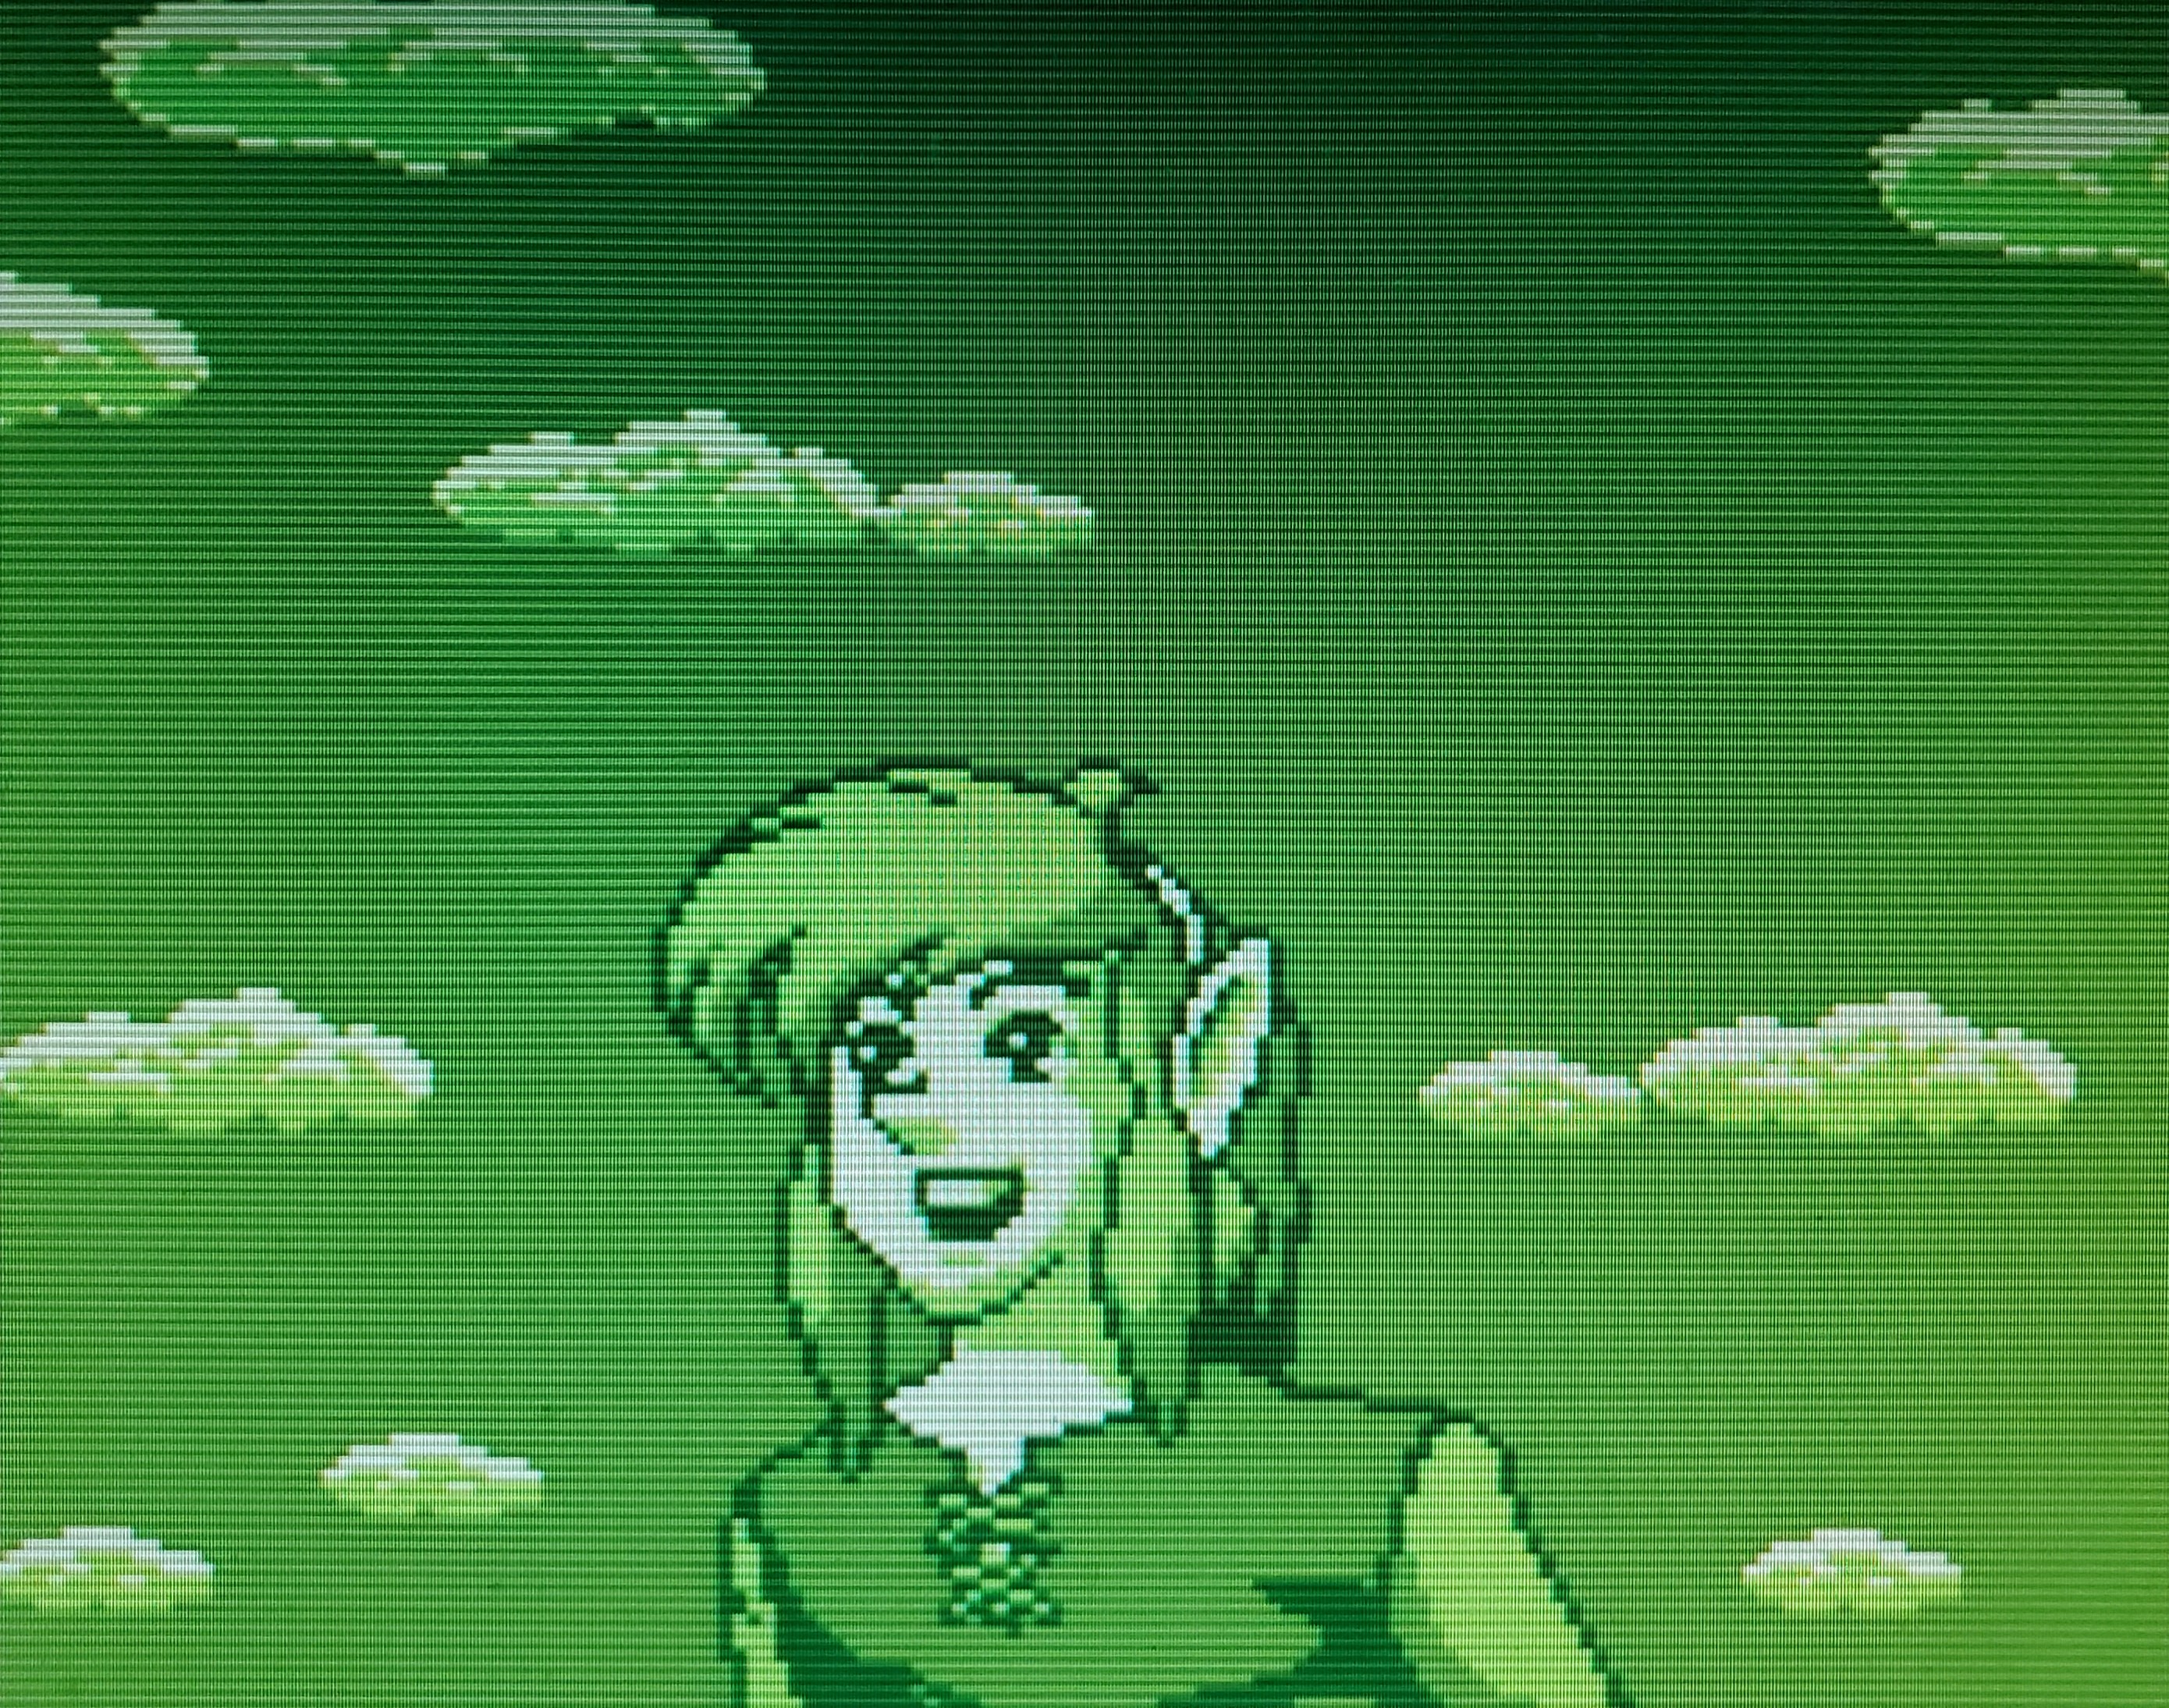 The Legend of Zelda: Link's Awakening DX - Part 1 - A Hero